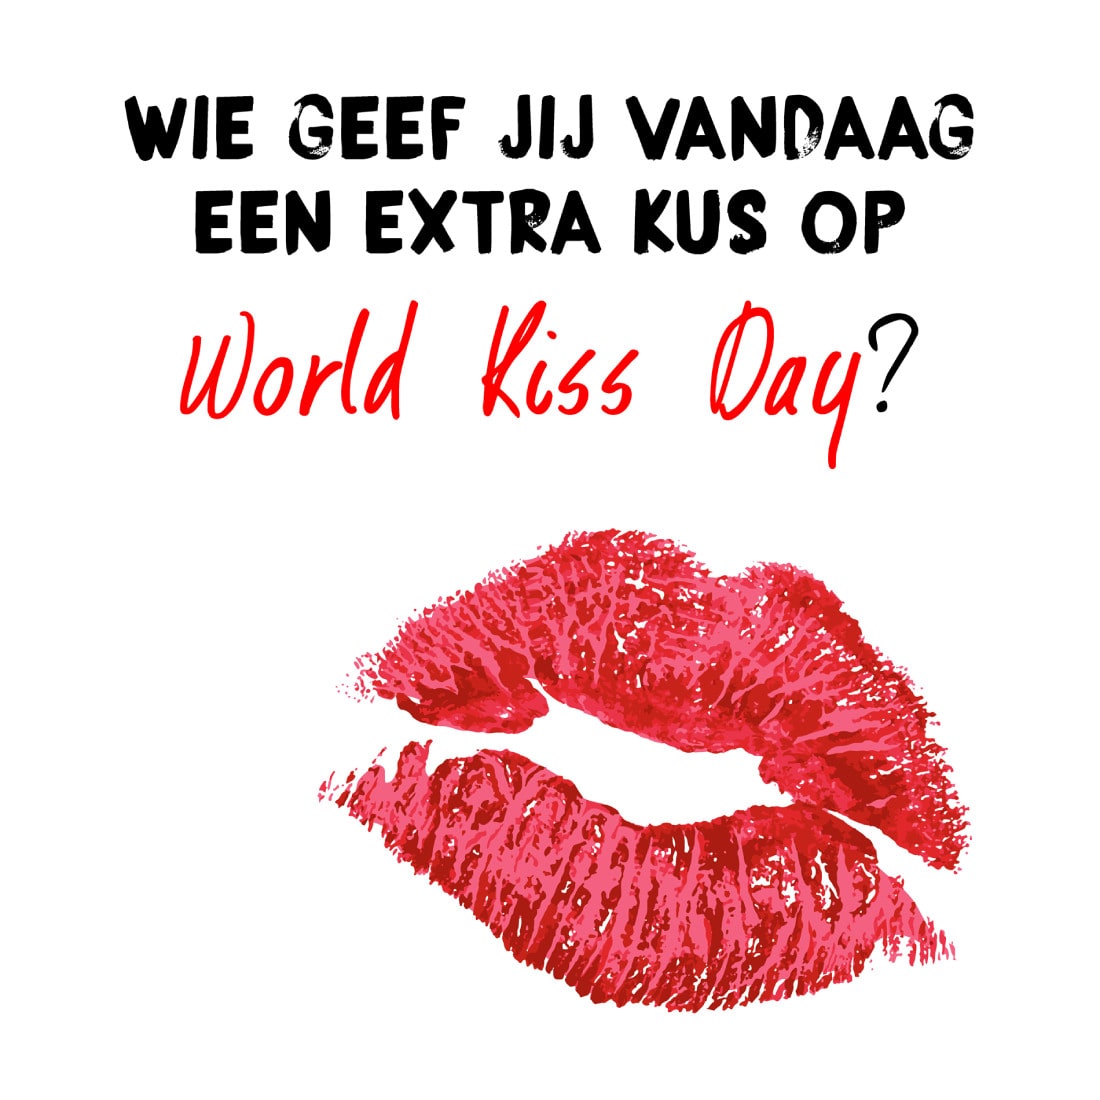 Wie geef jij vandaag een extra kus op World Kiss Day?